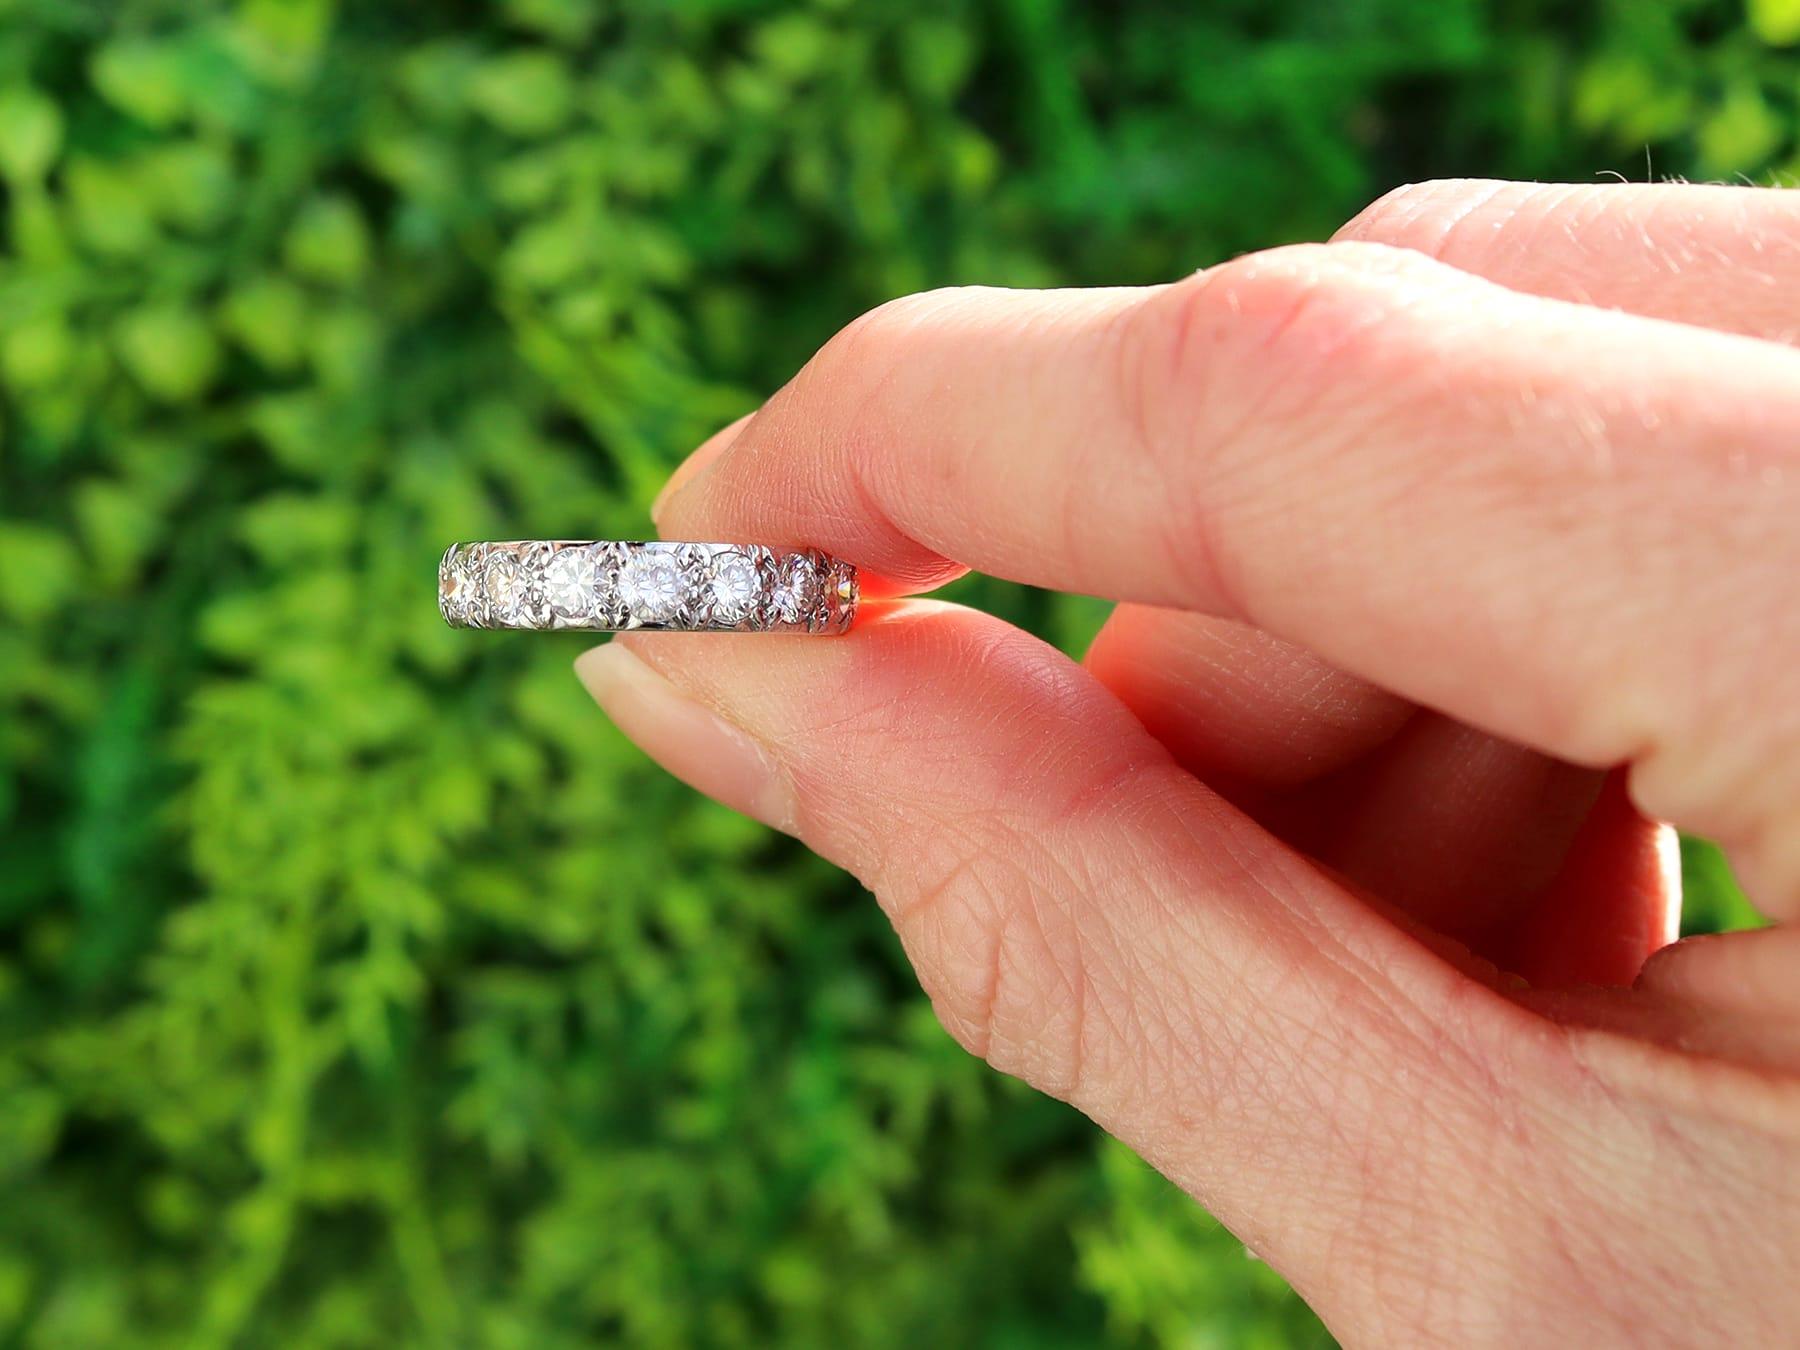 Ein atemberaubender, feiner und beeindruckender französischer Vintage-Ring mit 2,20 Karat in Platin für die Ewigkeit; Teil unserer vielfältigen Diamantschmuck-Kollektionen.

Dieser atemberaubende, edle und beeindruckende